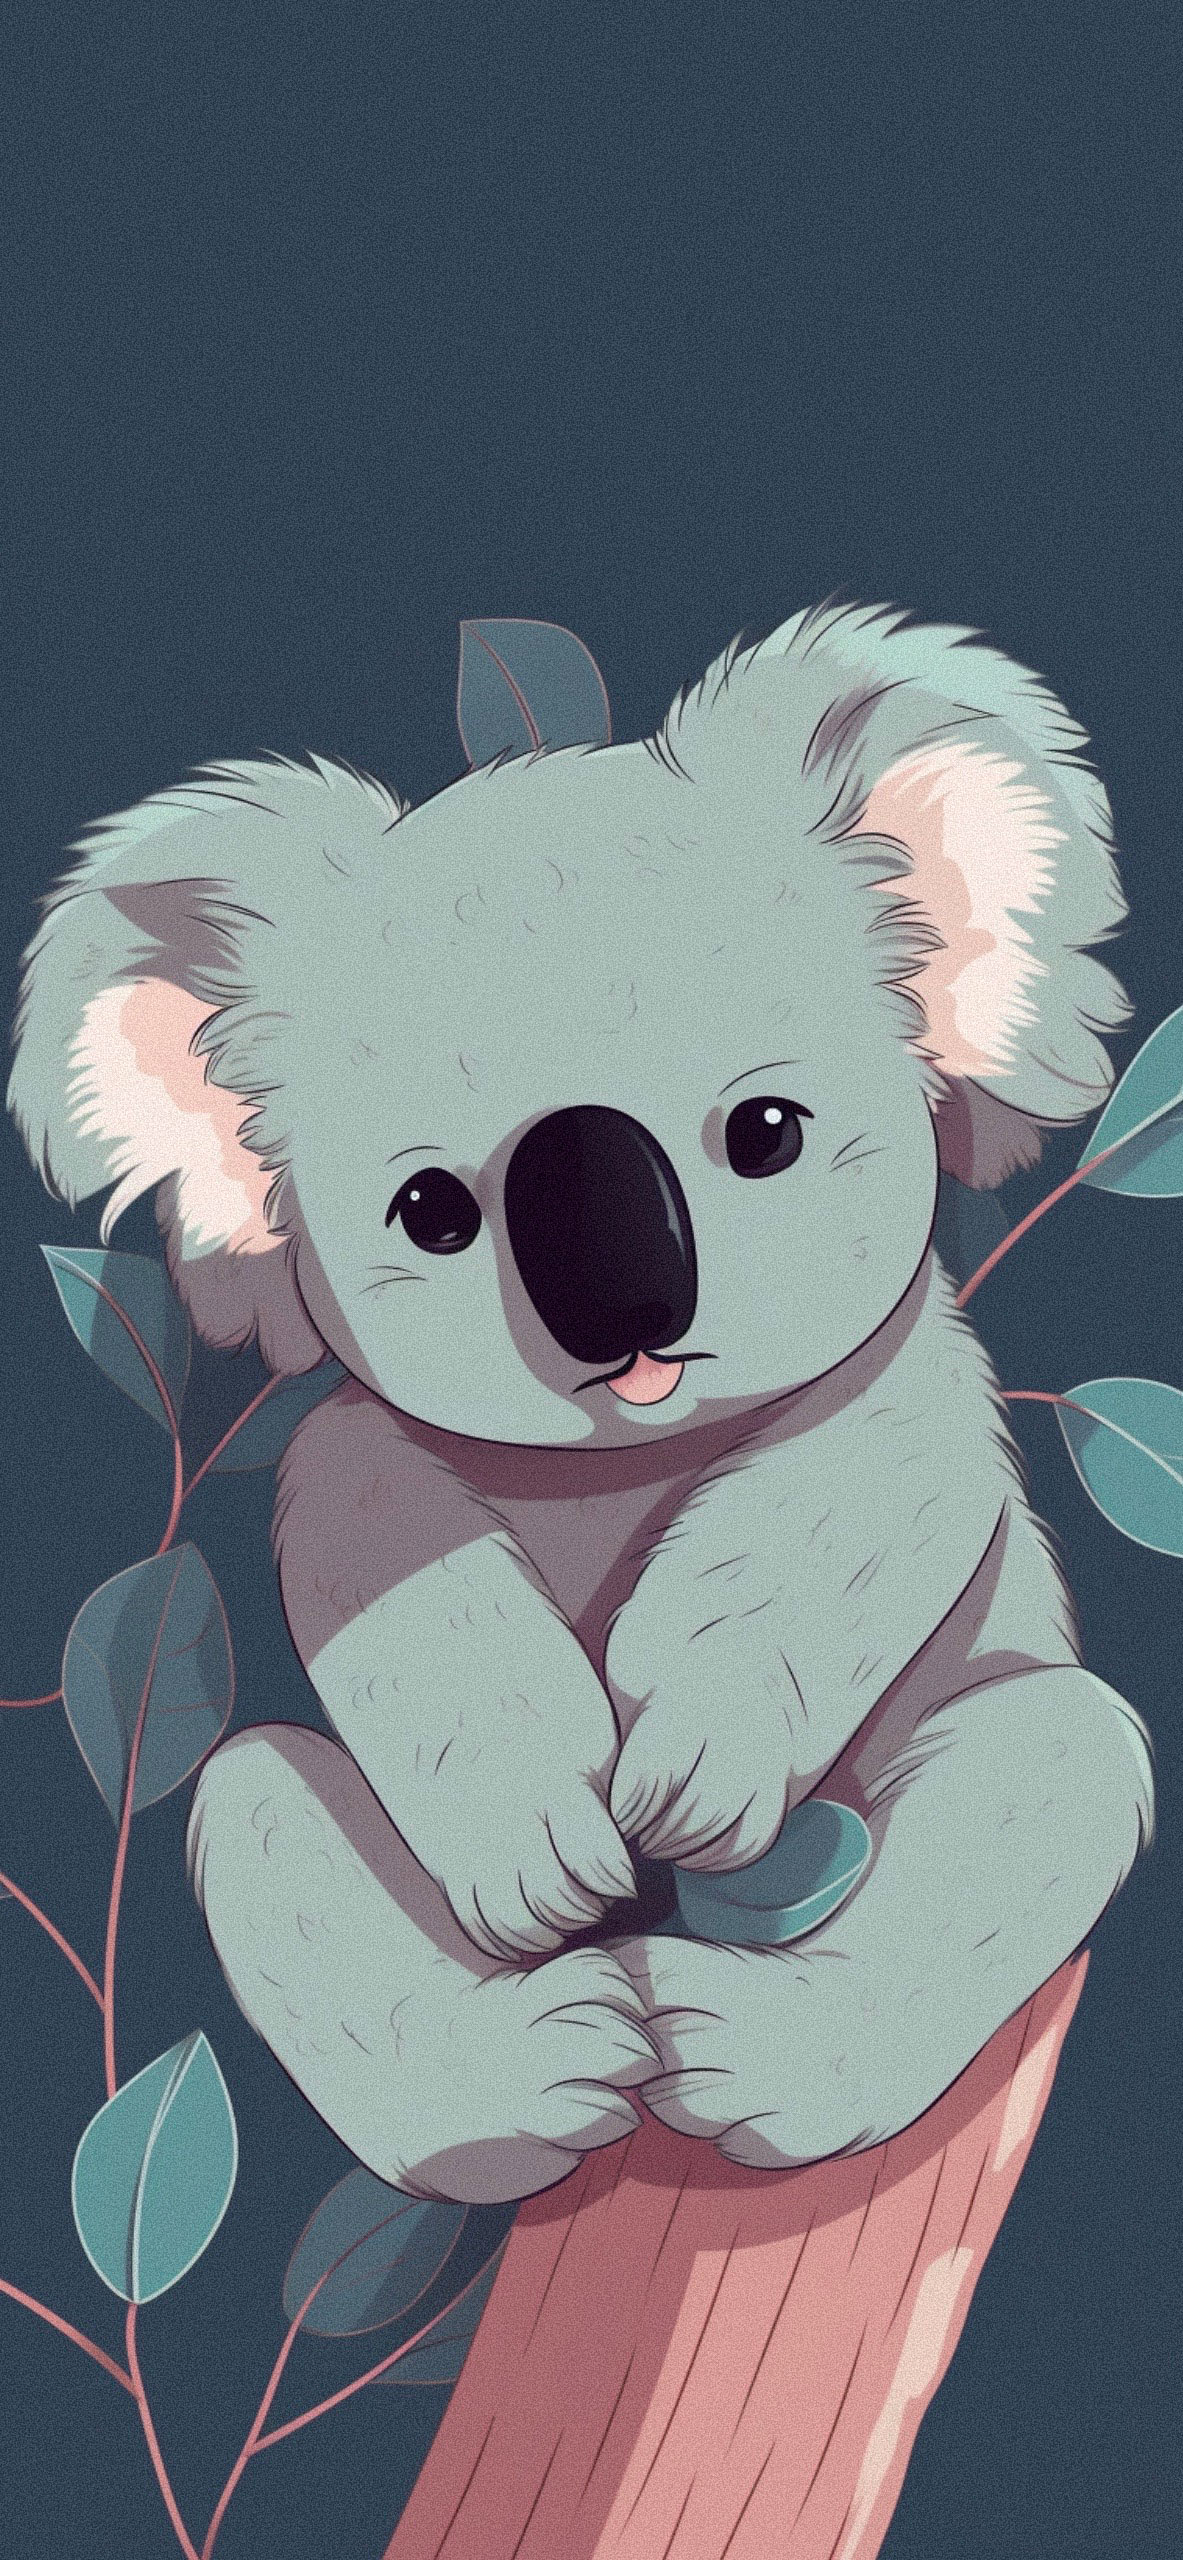 Cute Koala Cartoon Wallpaper Aesthetic Koala Cartoon Wallpaper